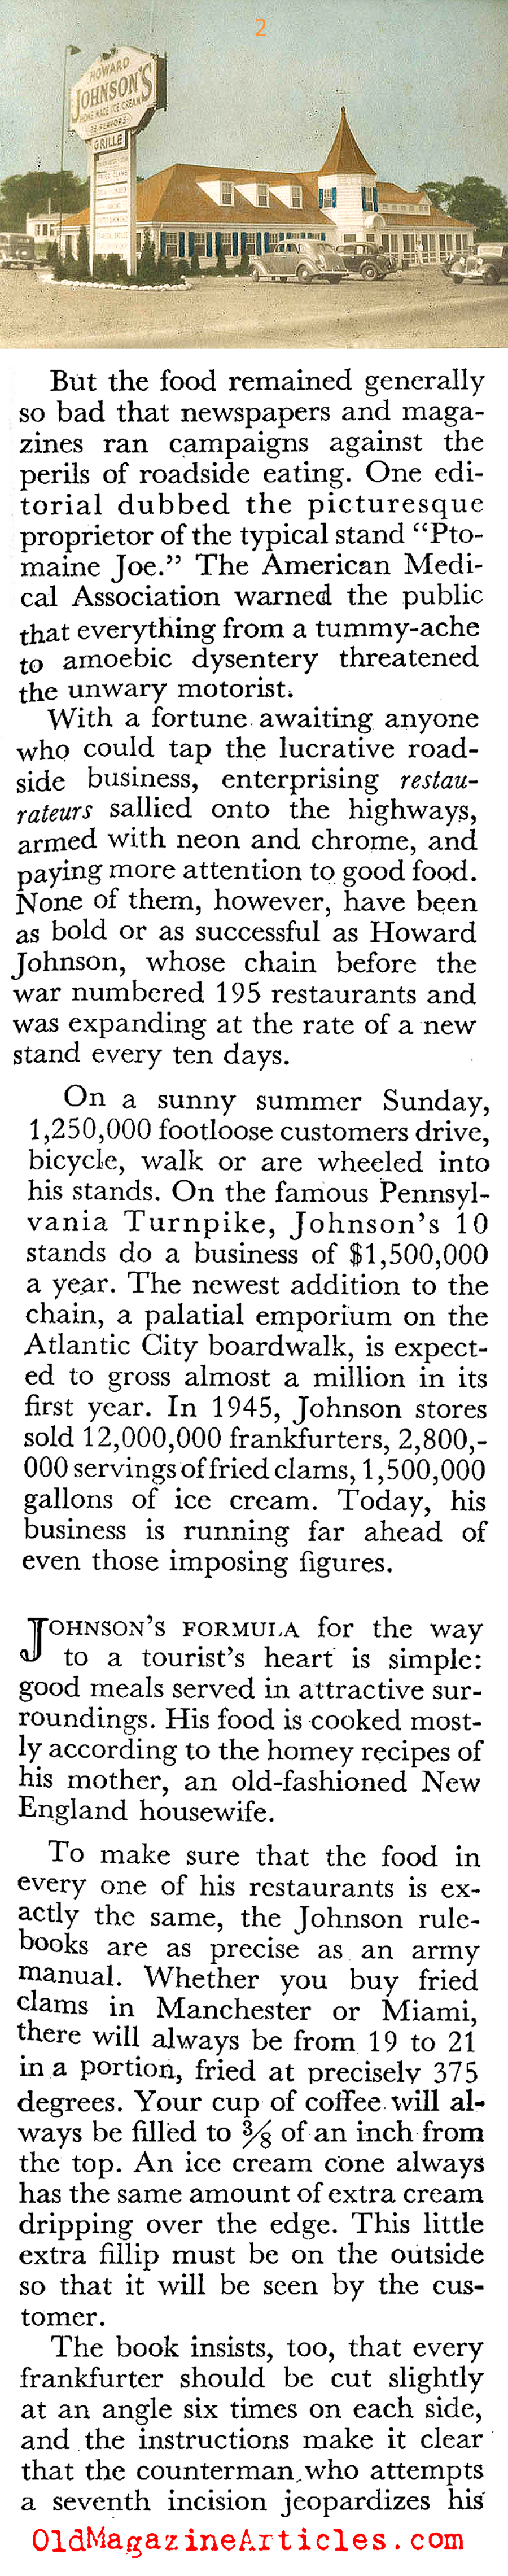 Howard Johnson's Roadside Restaurants (Coronet Magazine, 1946)